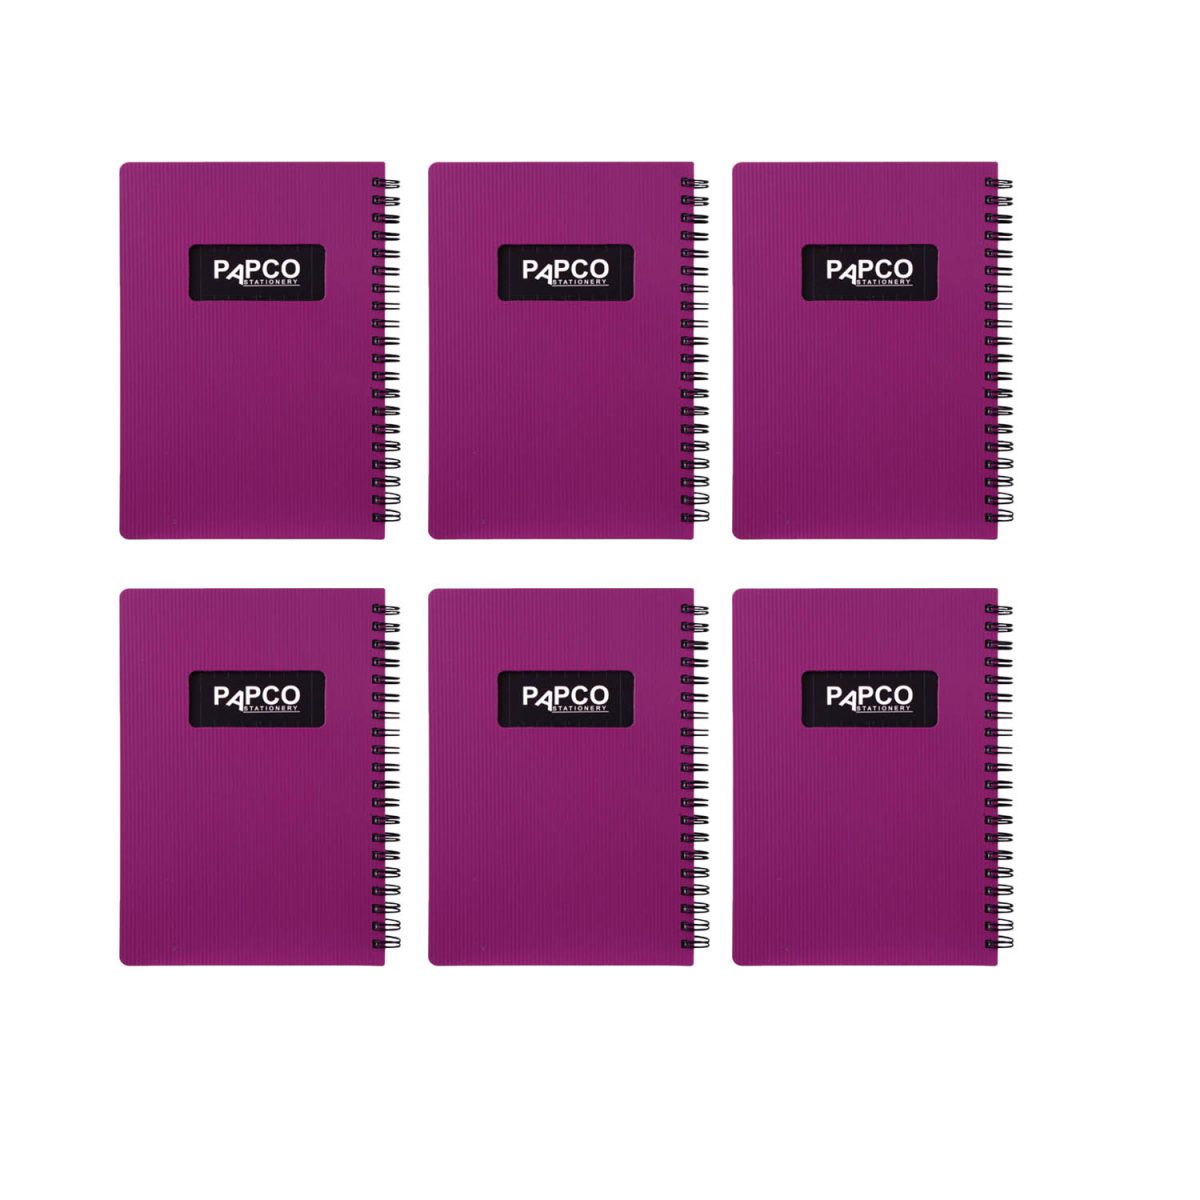 دفتر یادداشت پاپکو مدل 647 بسته 6 عددی